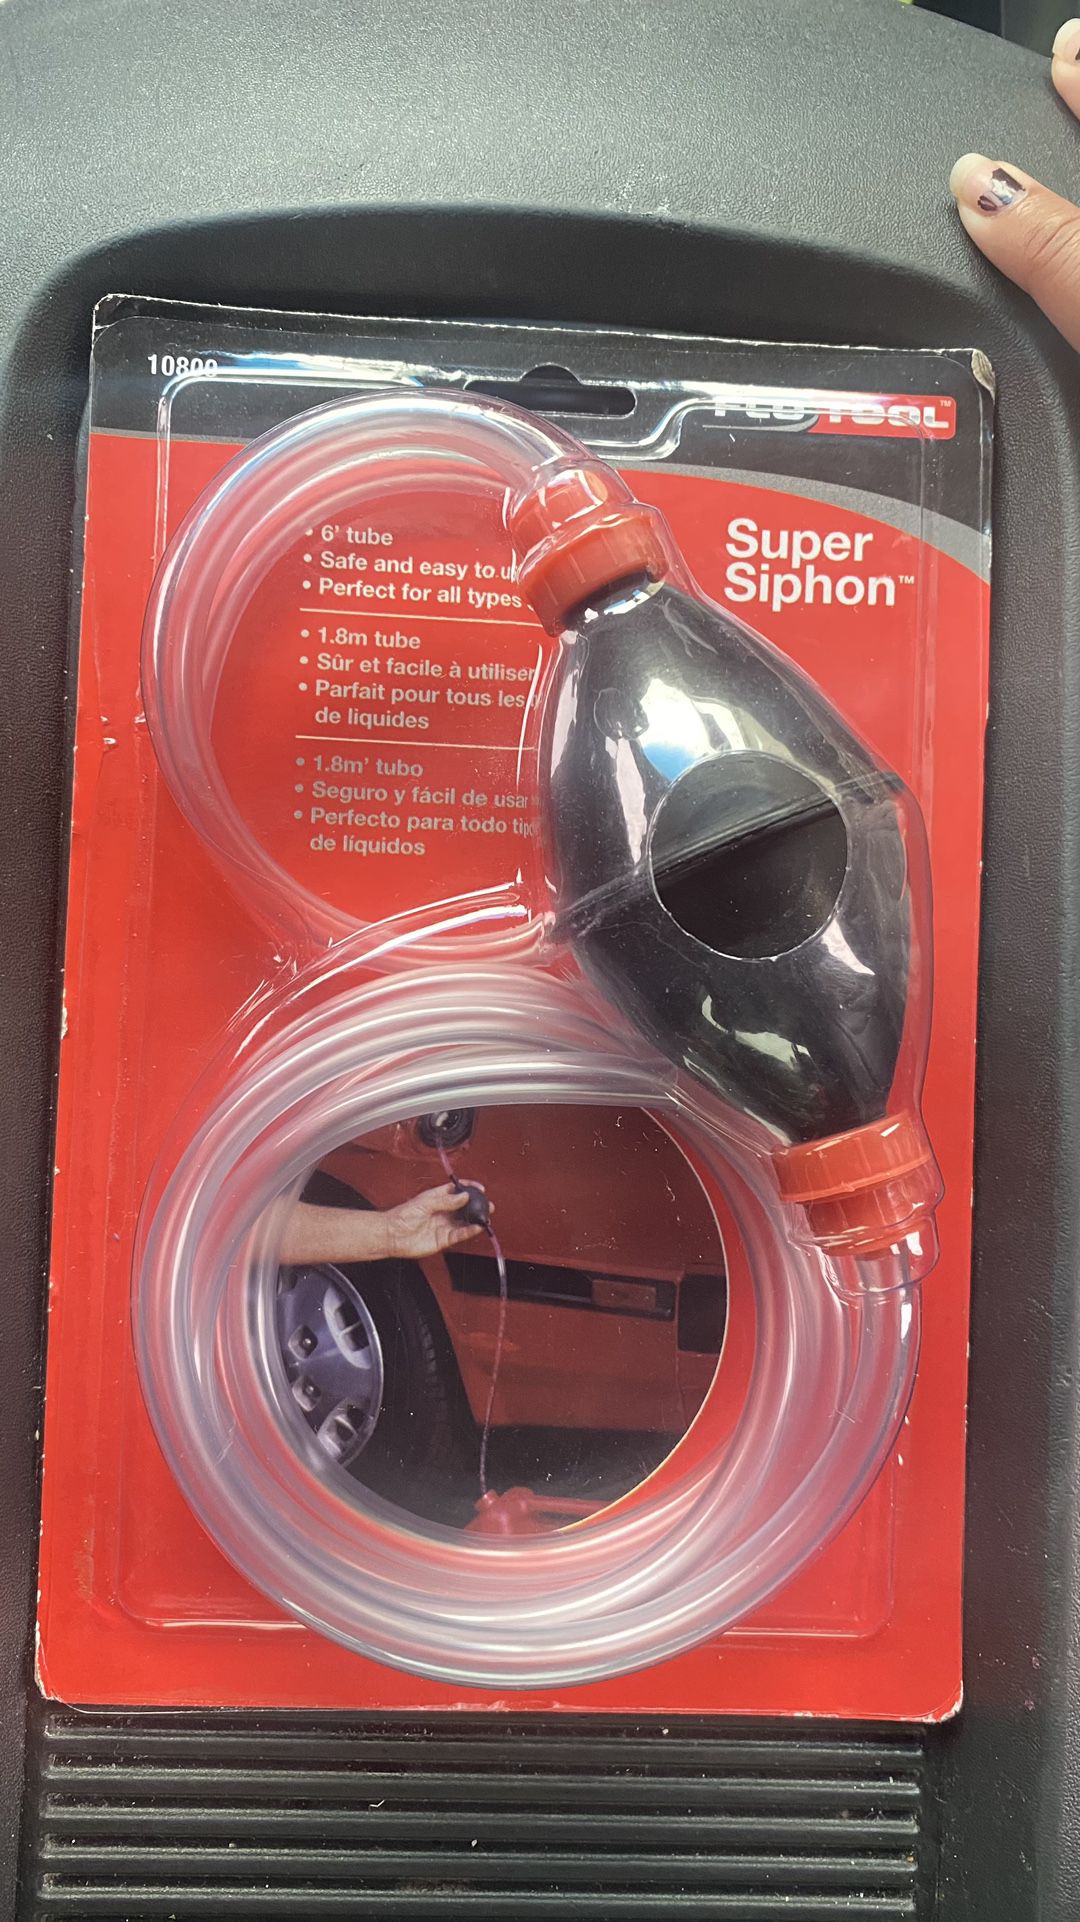 Super Siphon